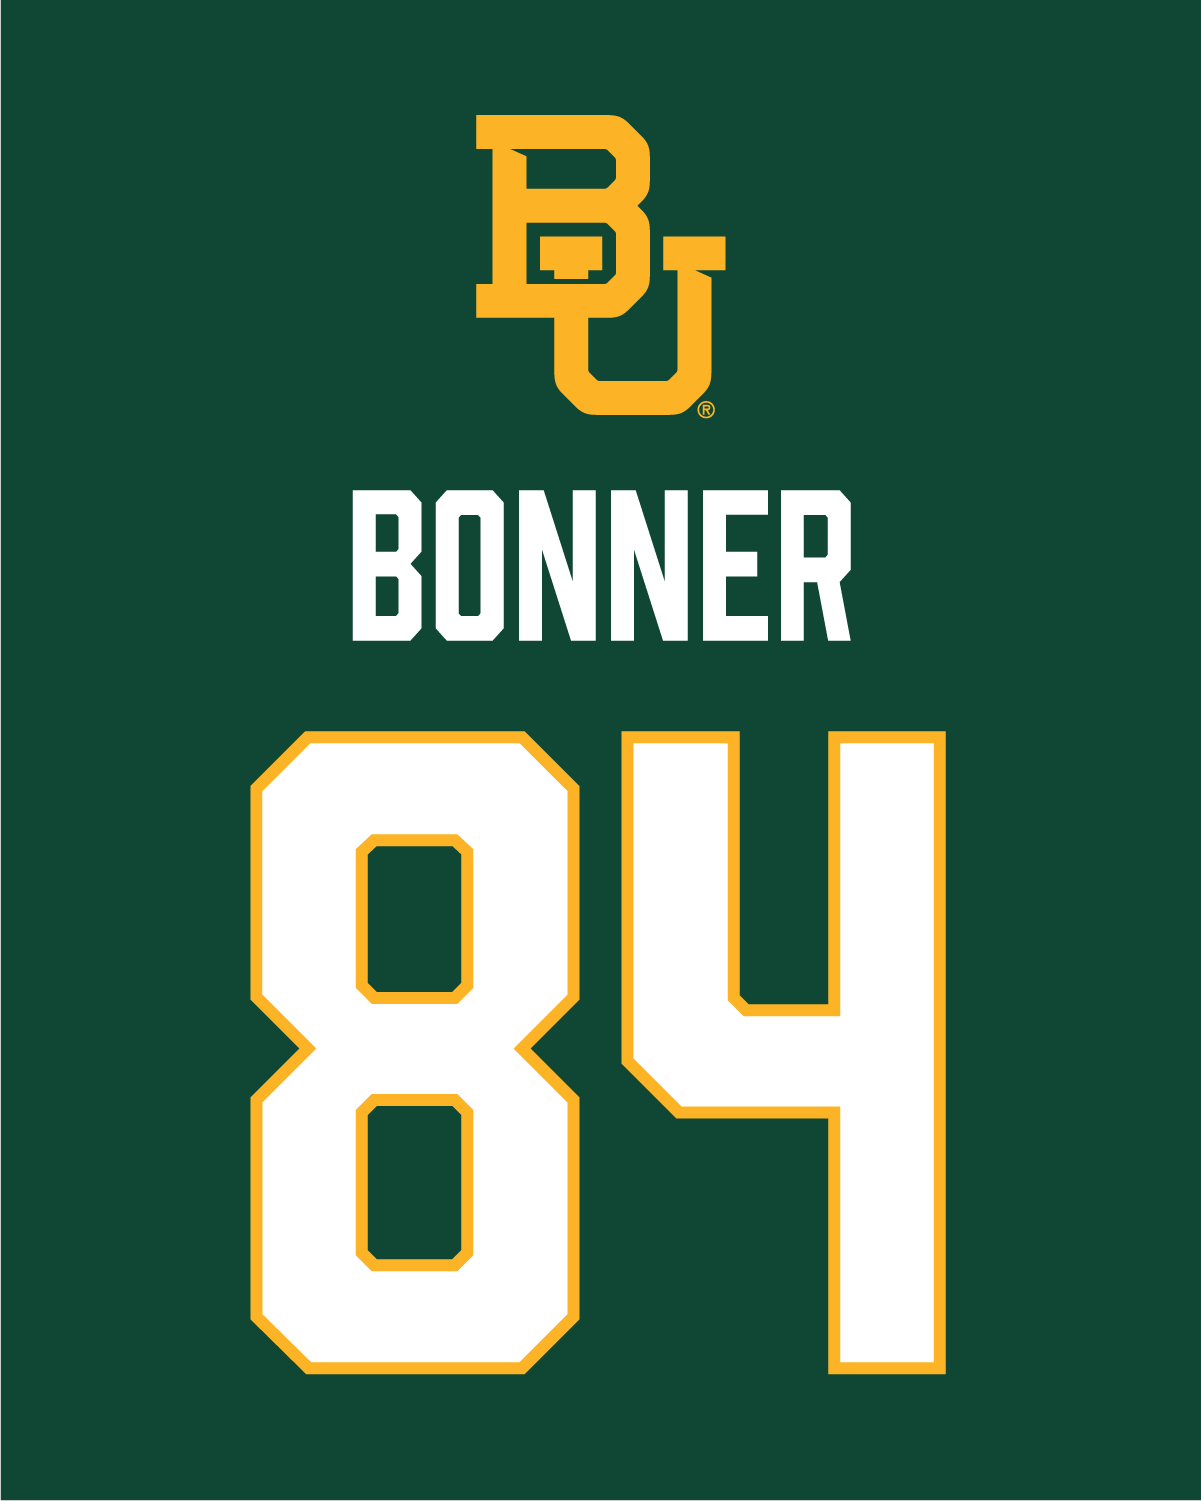 Cameron Bonner | #84